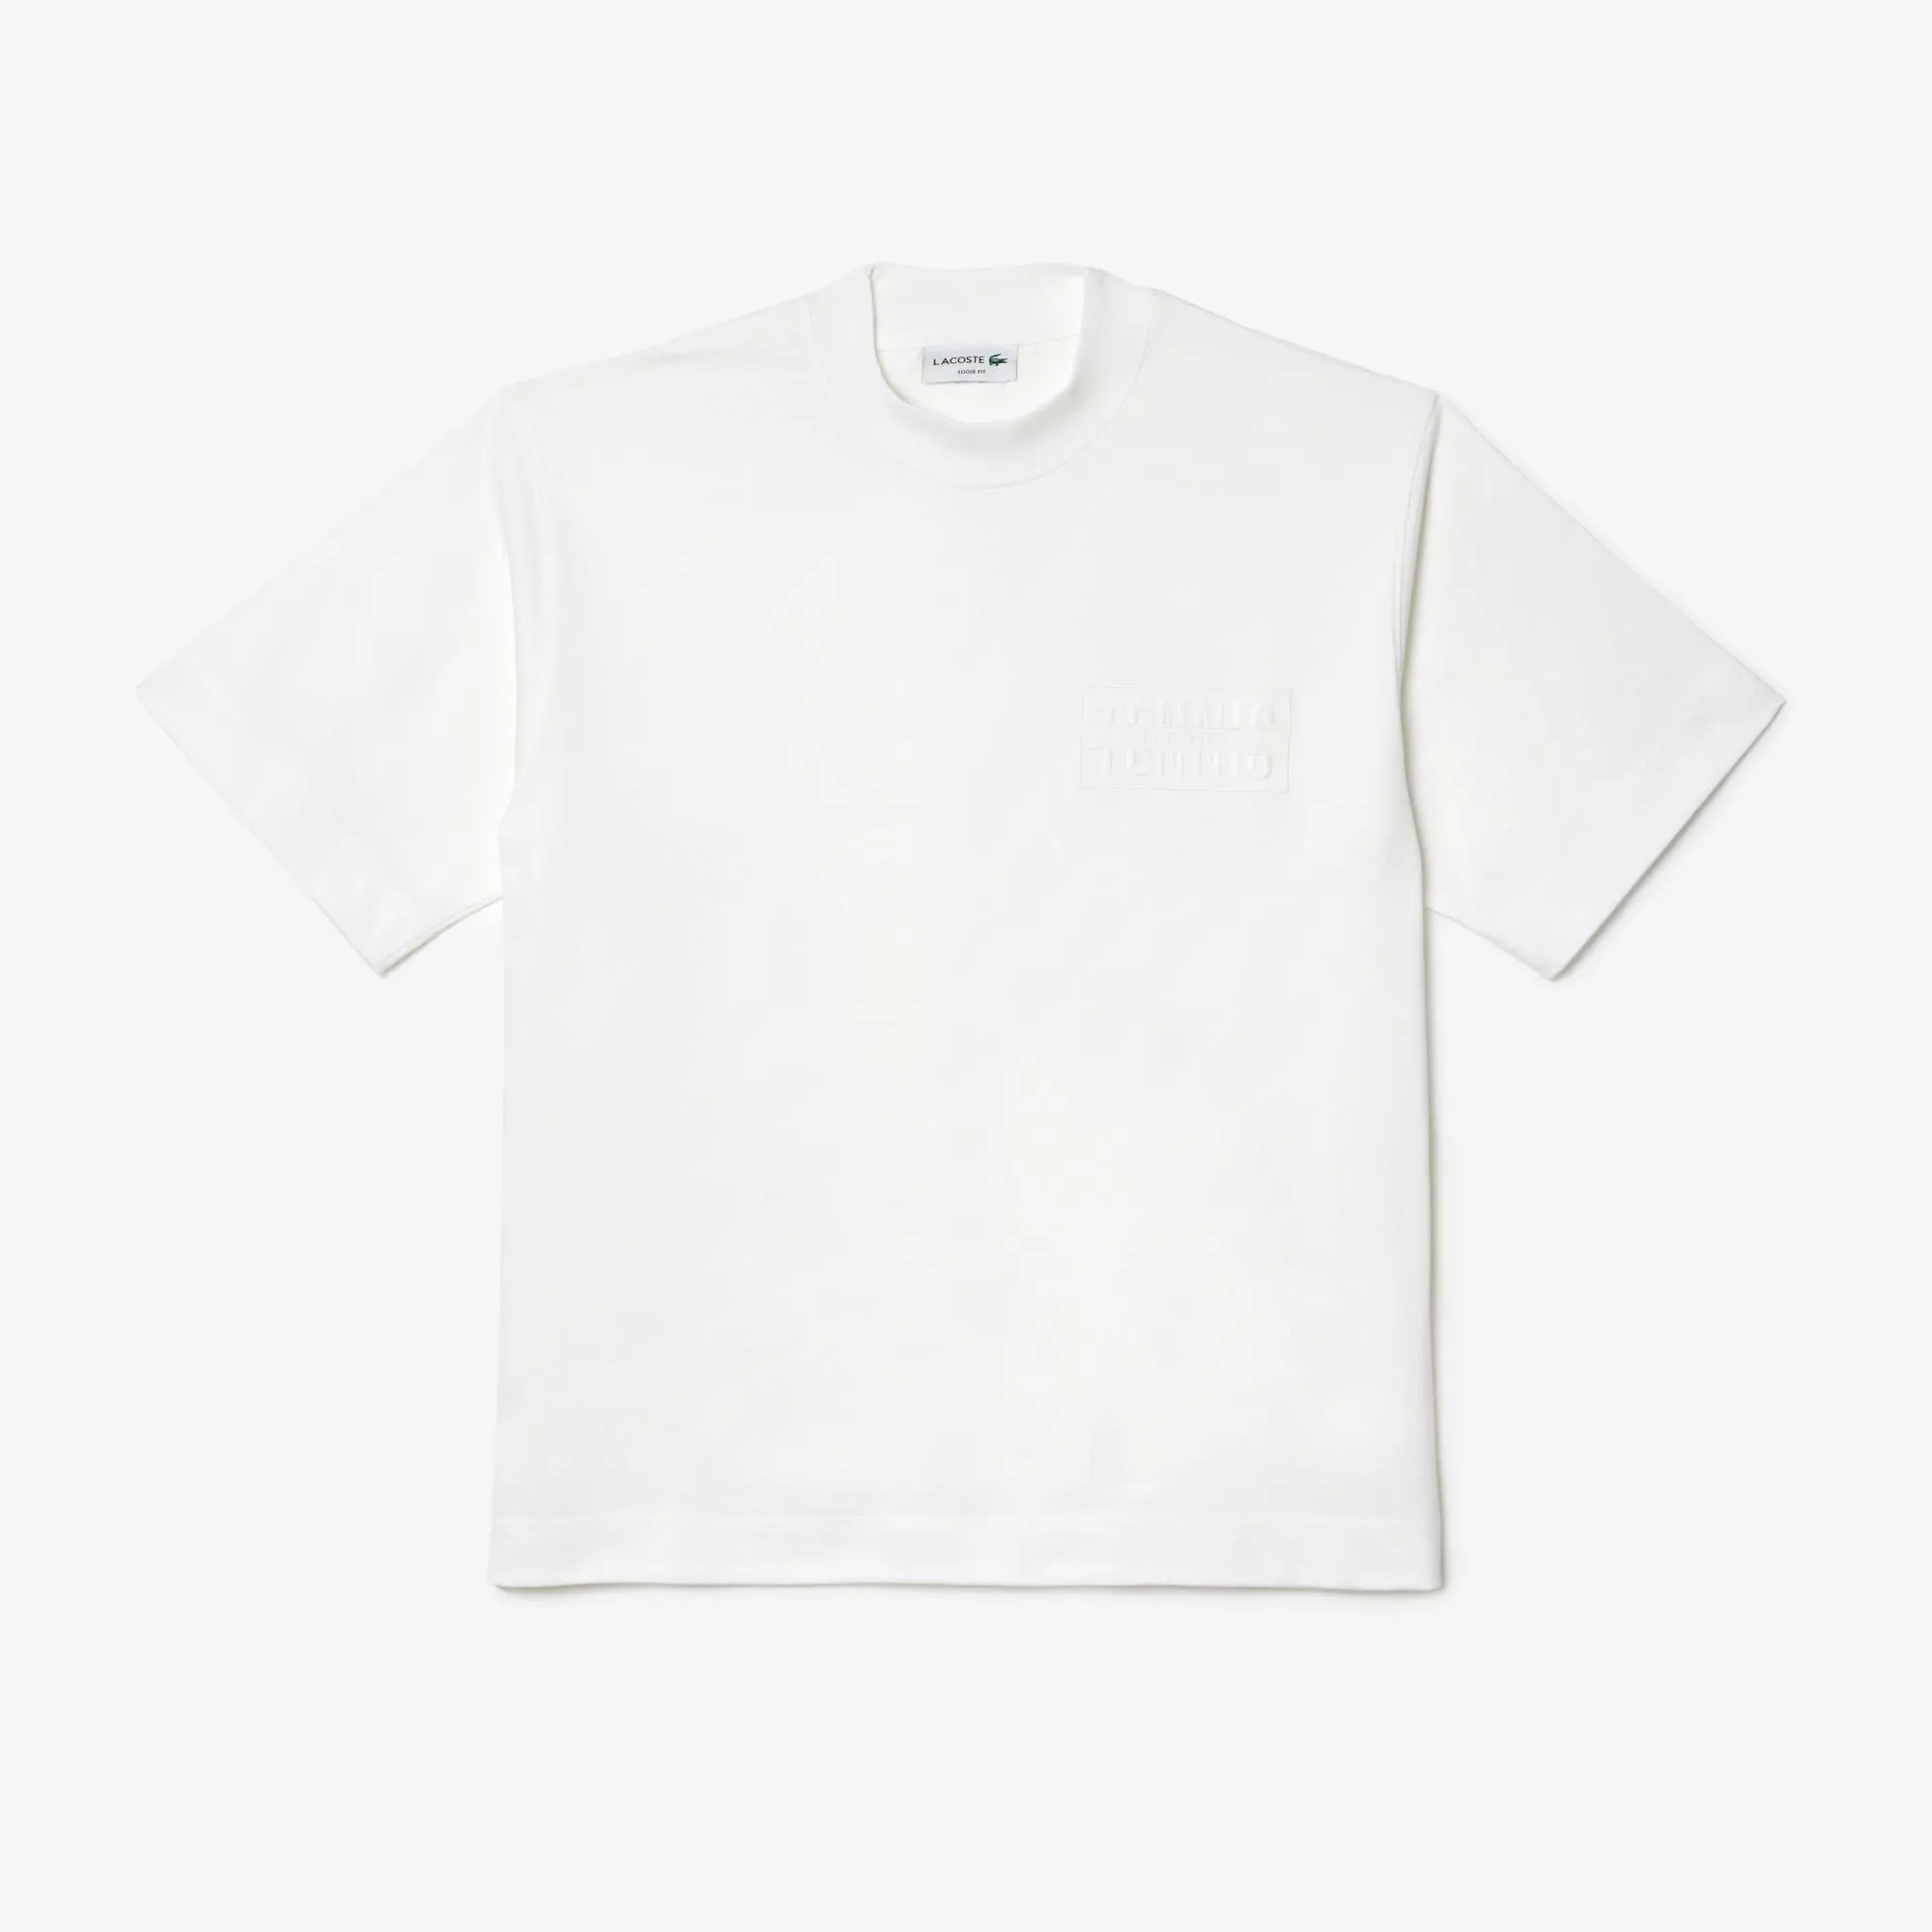 Lacoste T-shirt em algodão loose fit com bordado. 2